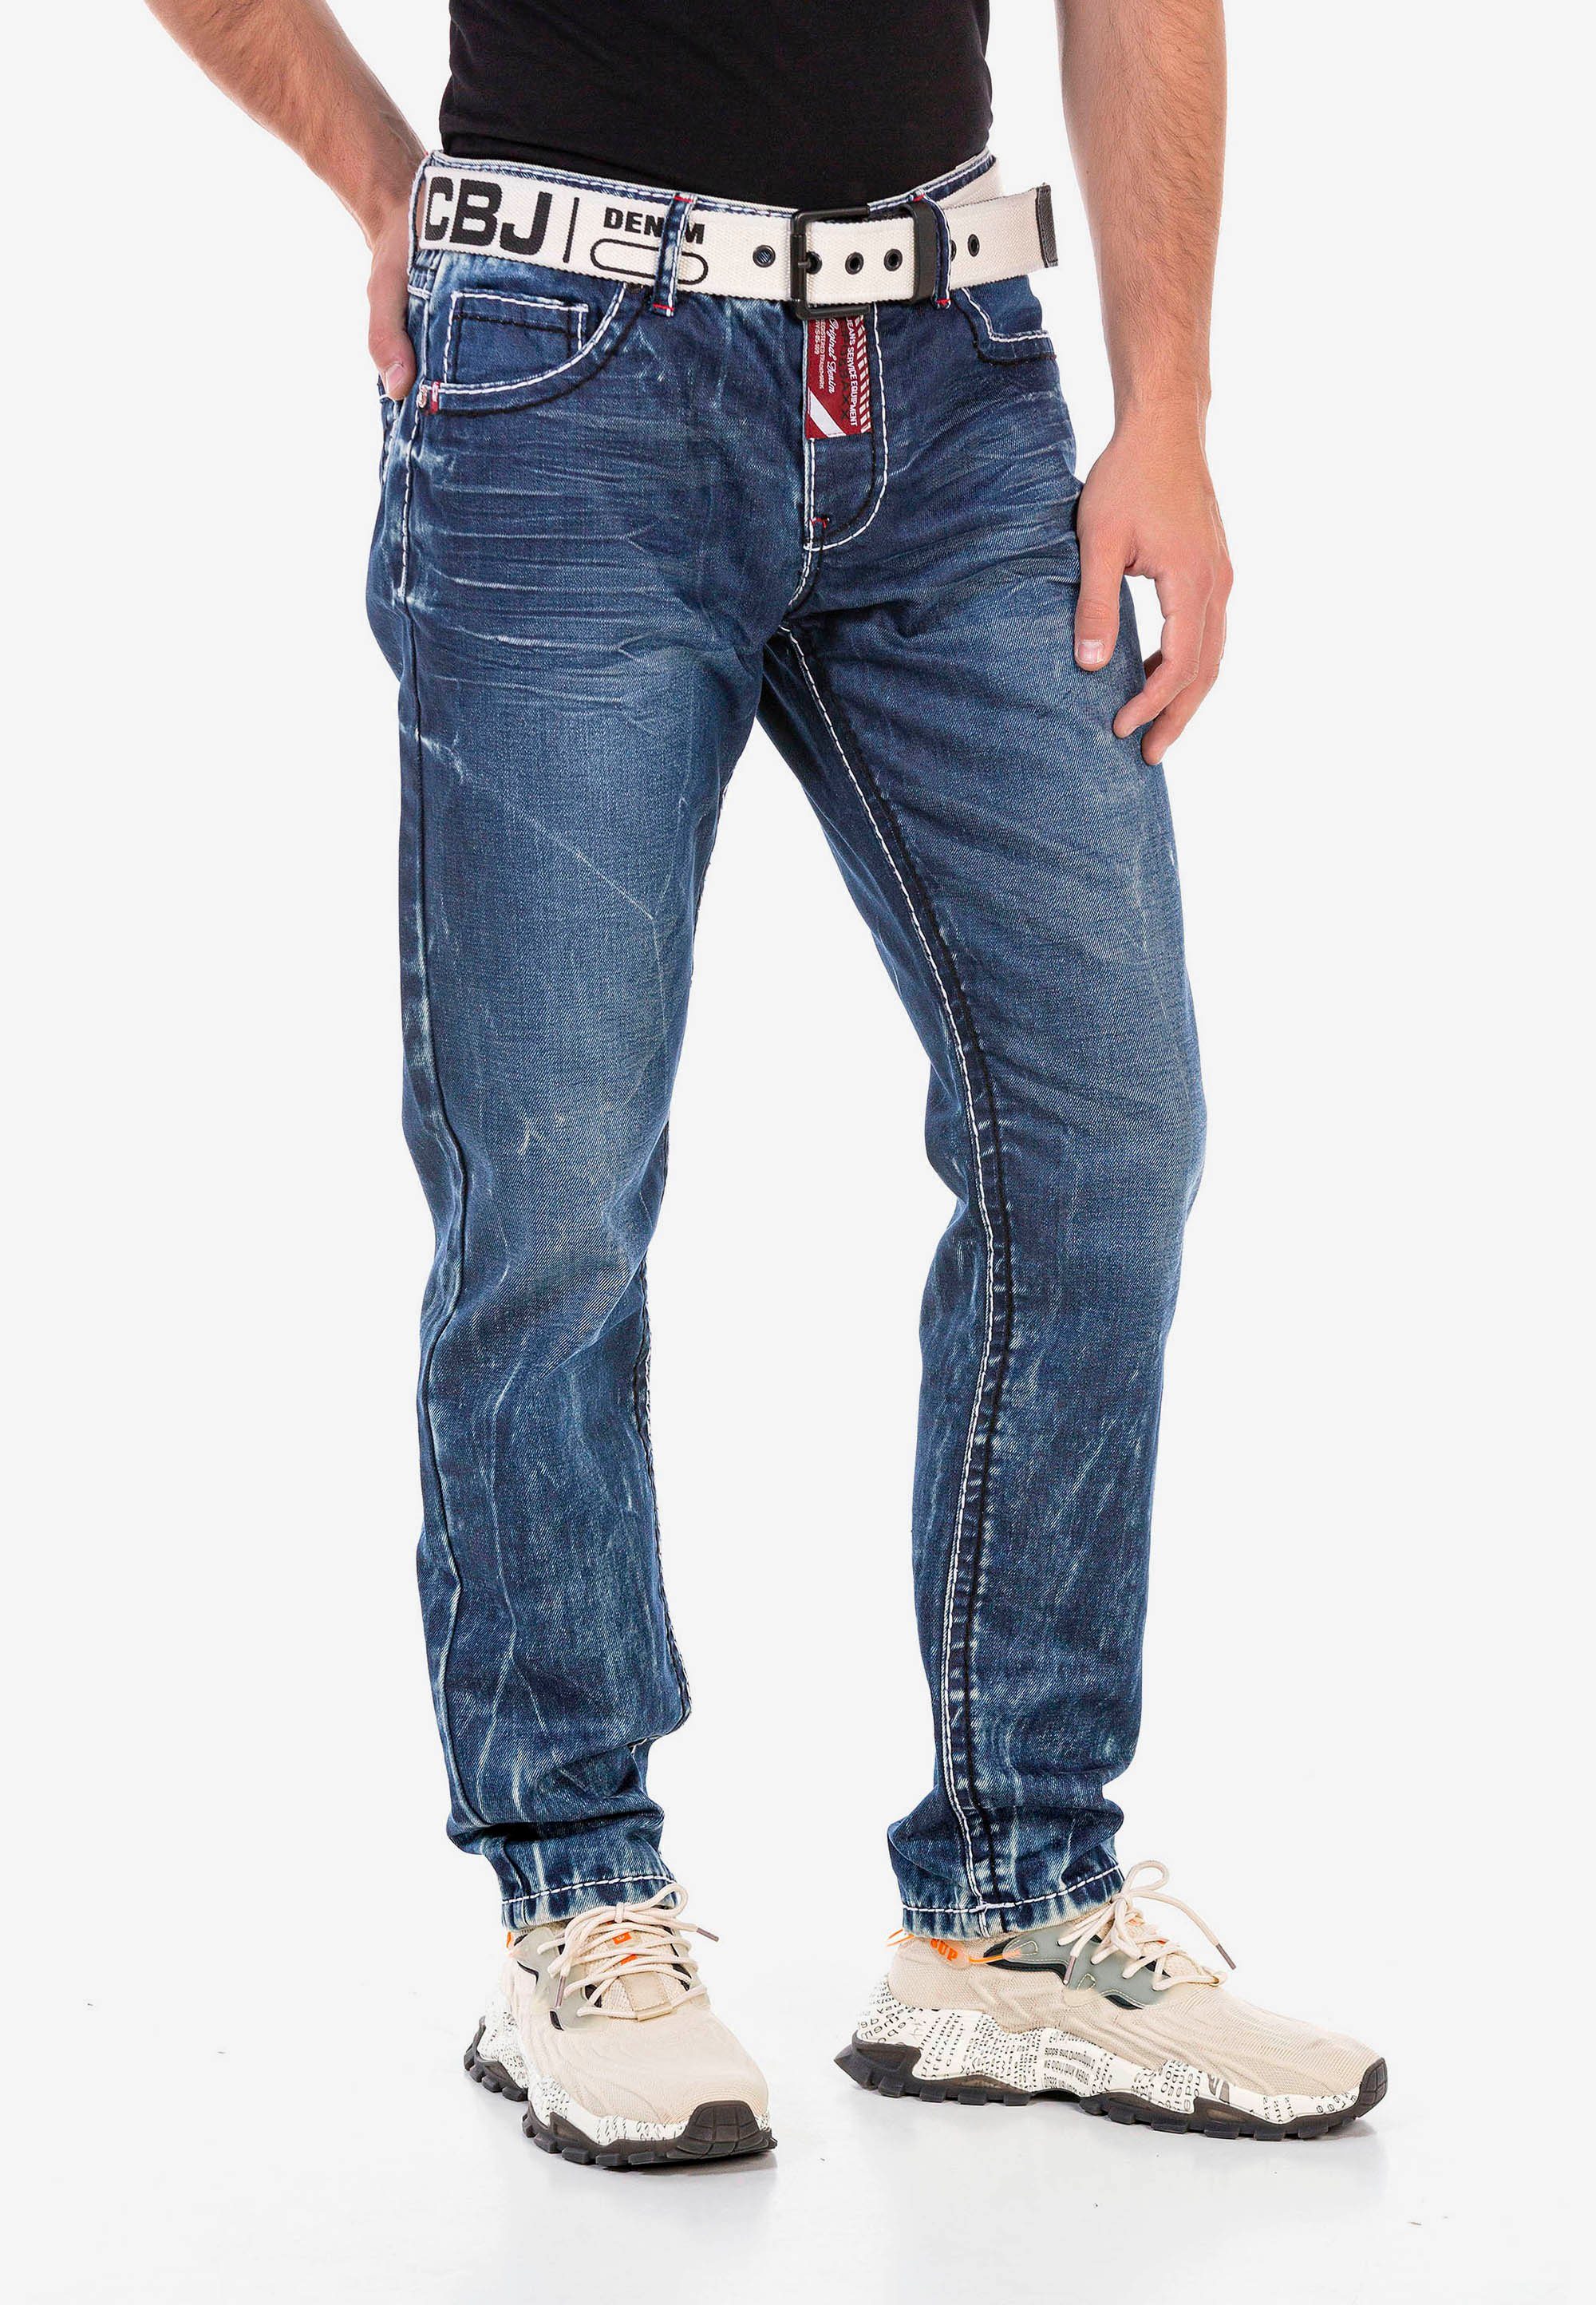 Waschung extravaganter Cipo Baxx & mit Straight-Jeans